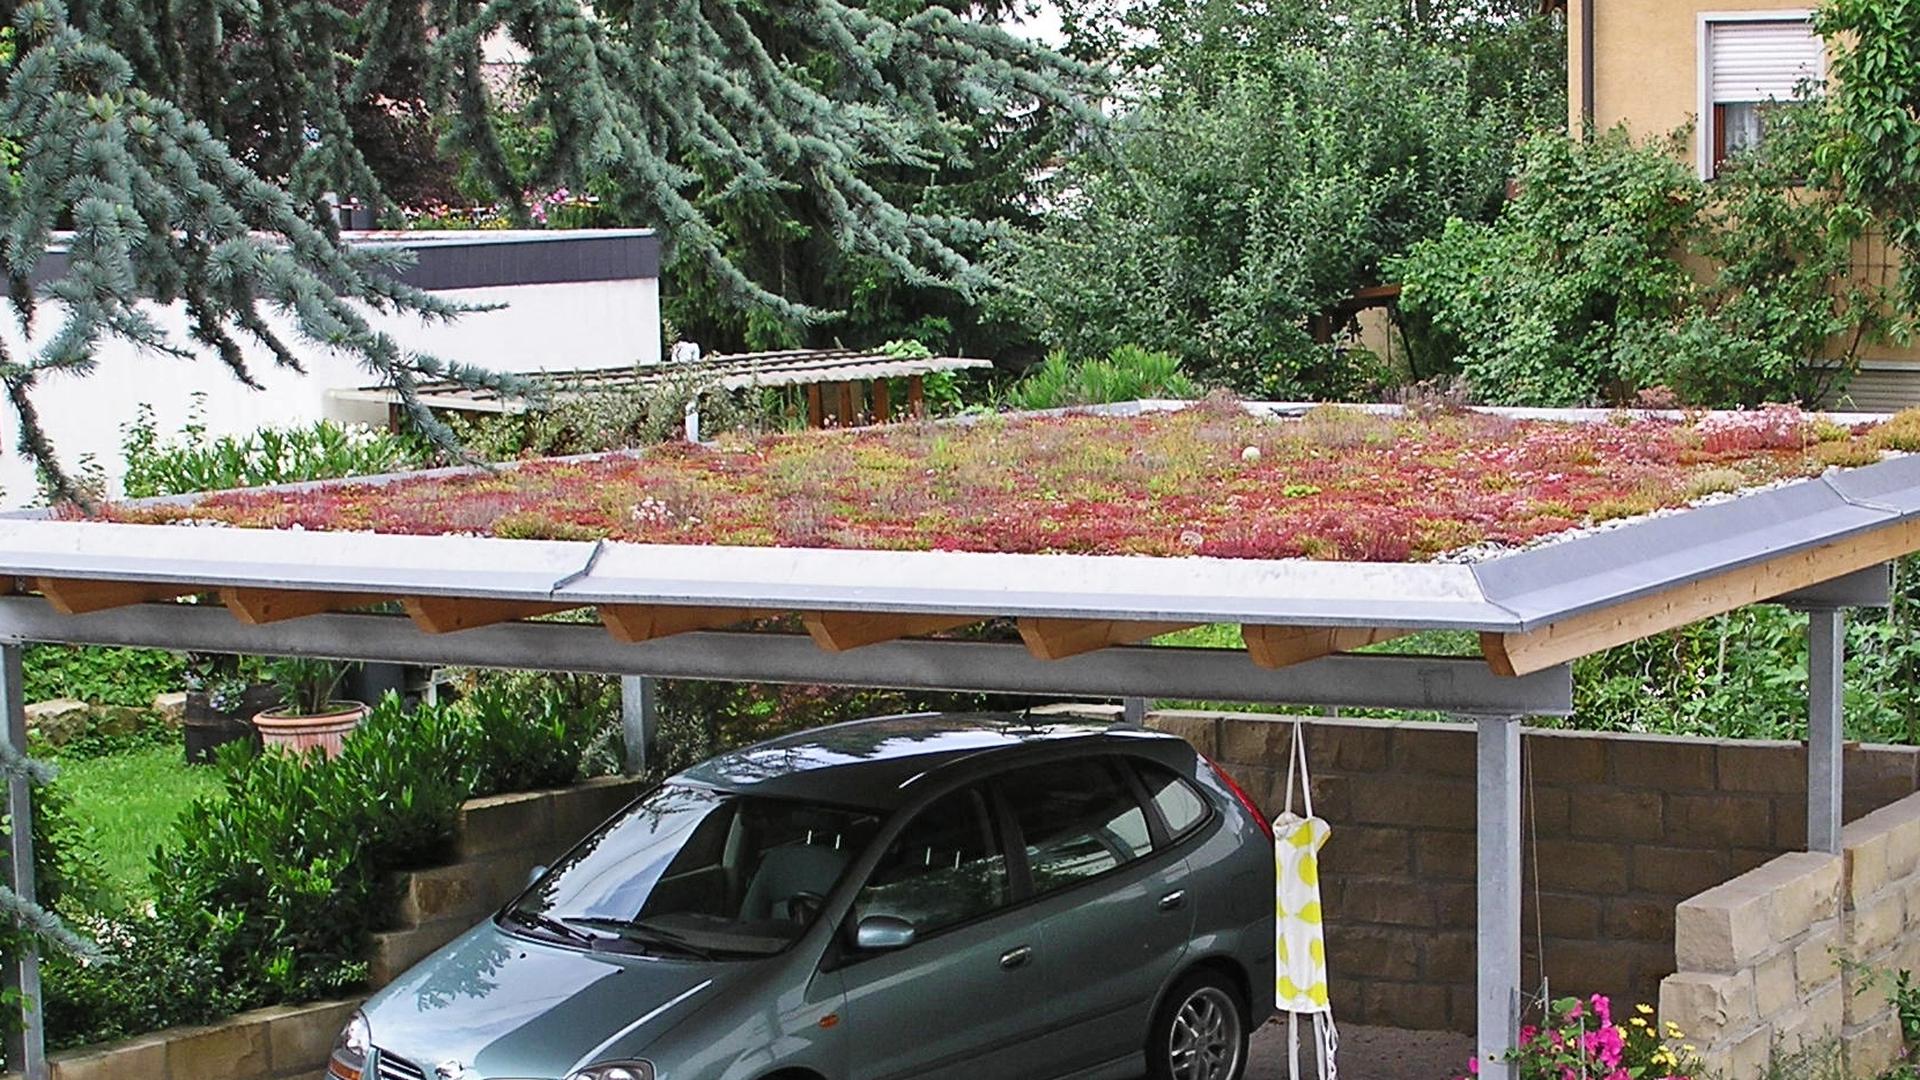 Auf den Dächern von Carports und Garagen sprießen immer häufiger Gräser und Stauden.